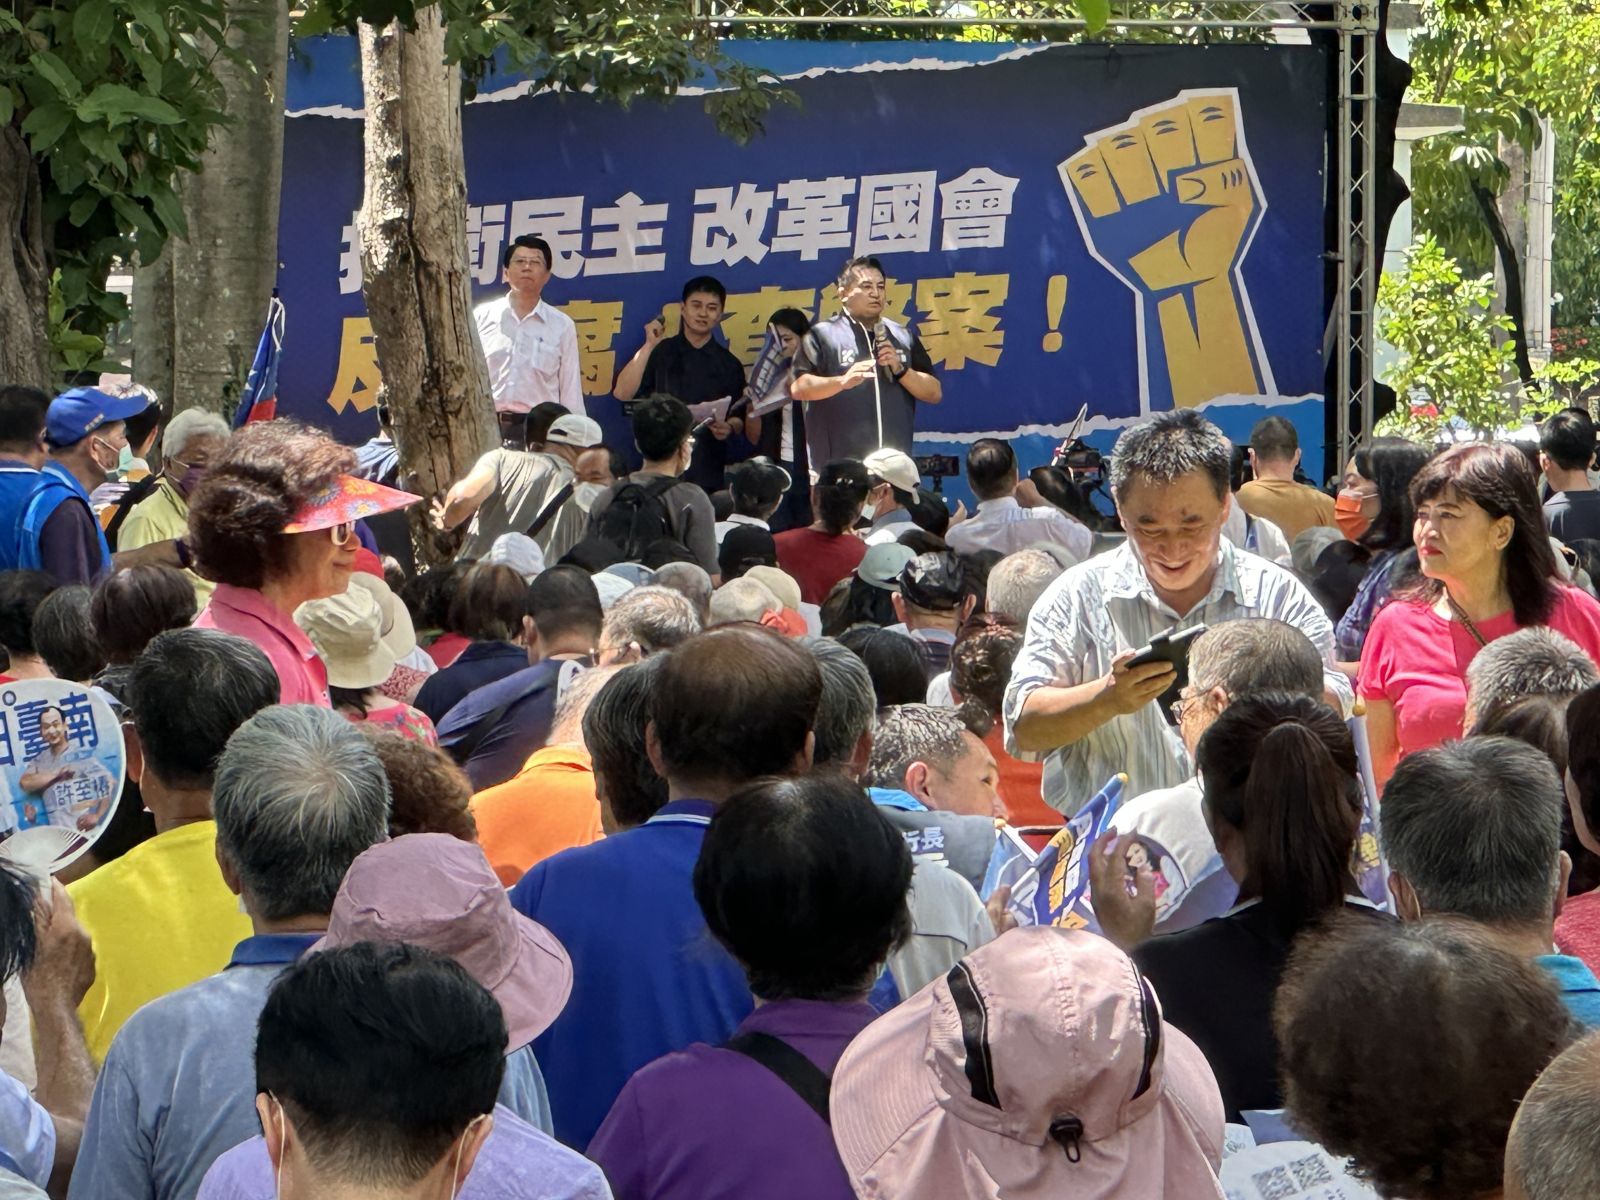 國民黨「捍衛民主、改革國會」台南站參與人數不多，設備屬於陽春版。辛啓松攝